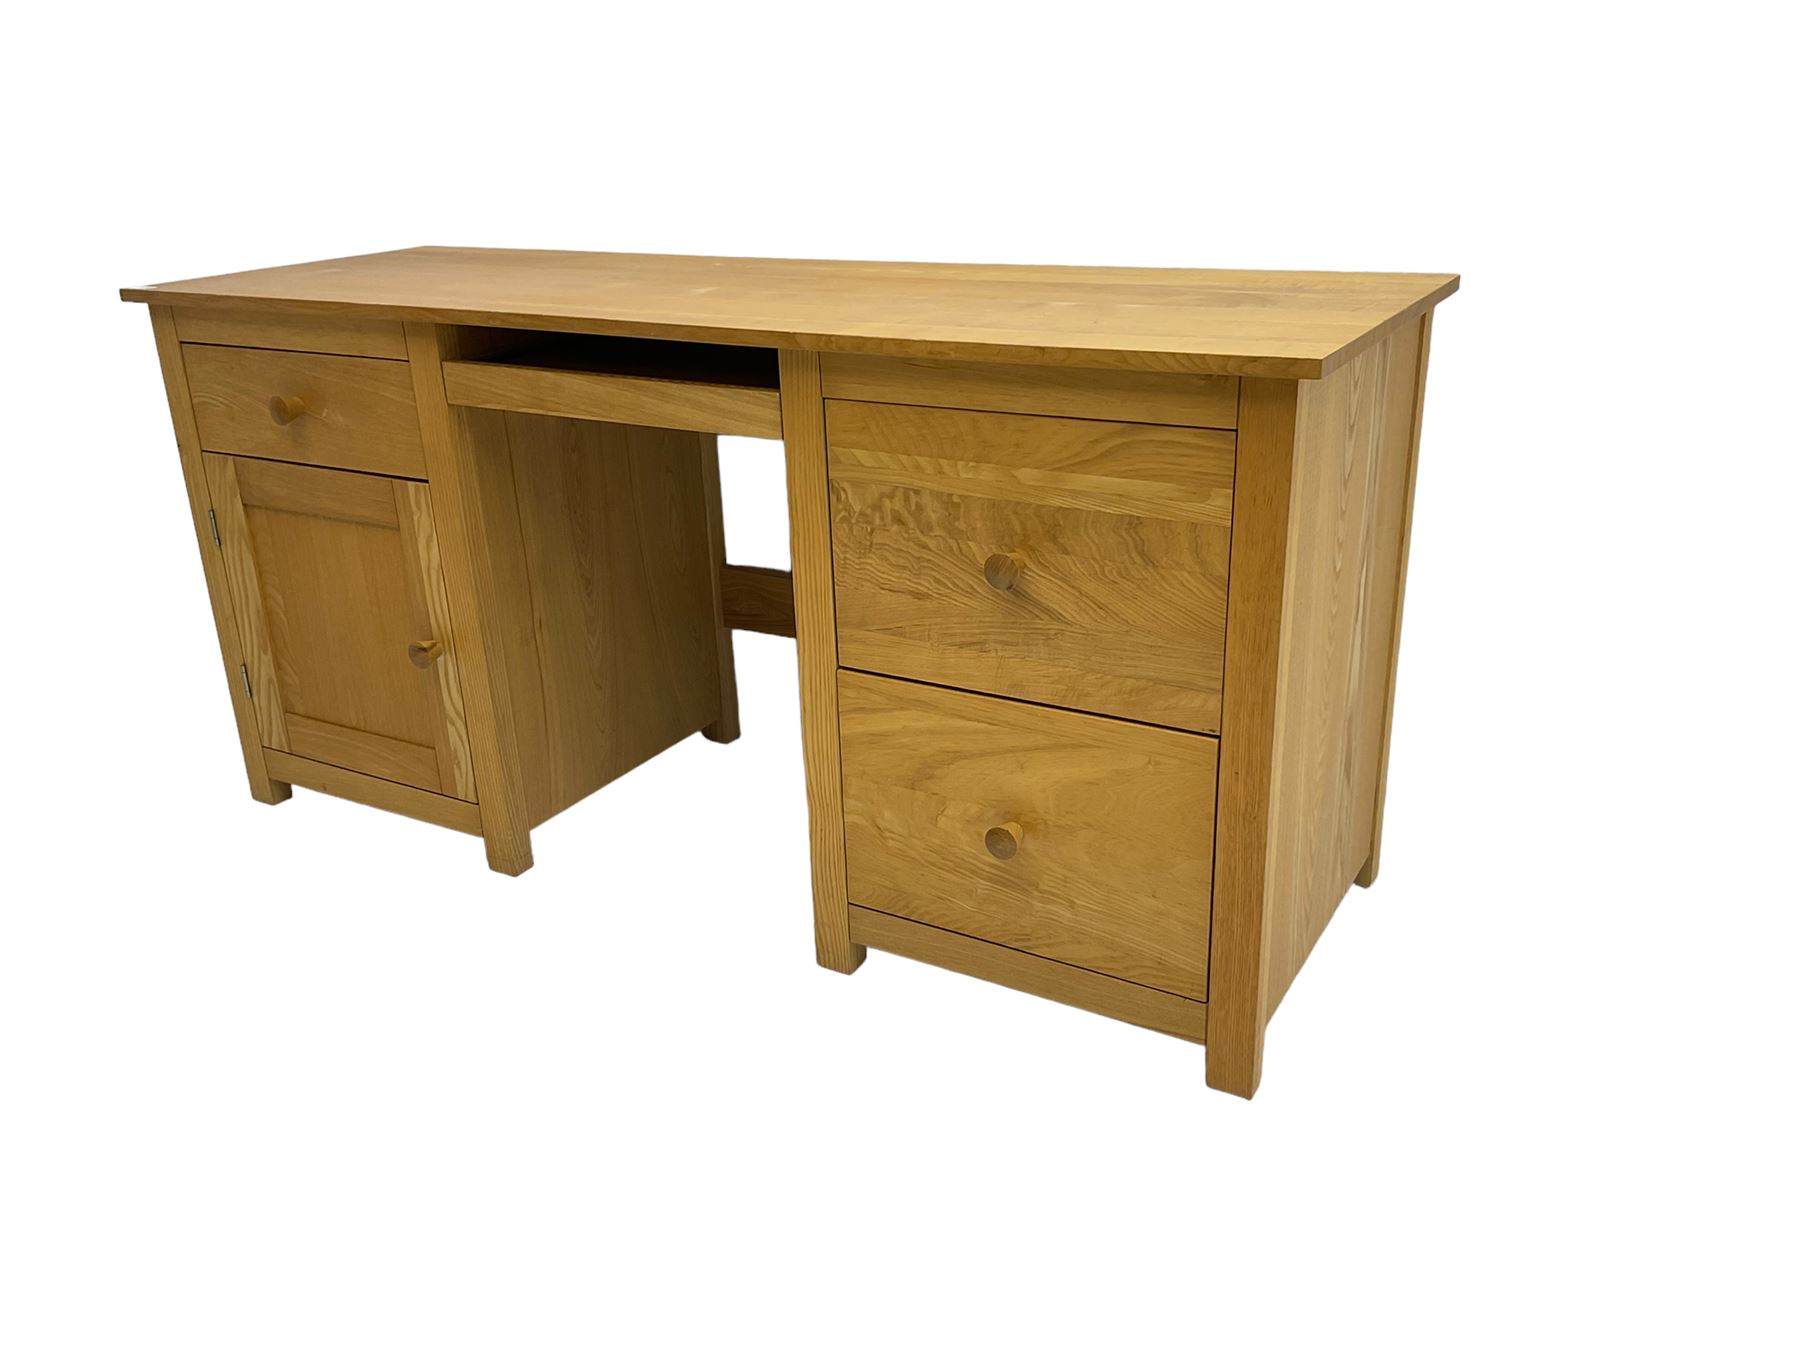 Solid ash twin pedestal desk - Image 4 of 6